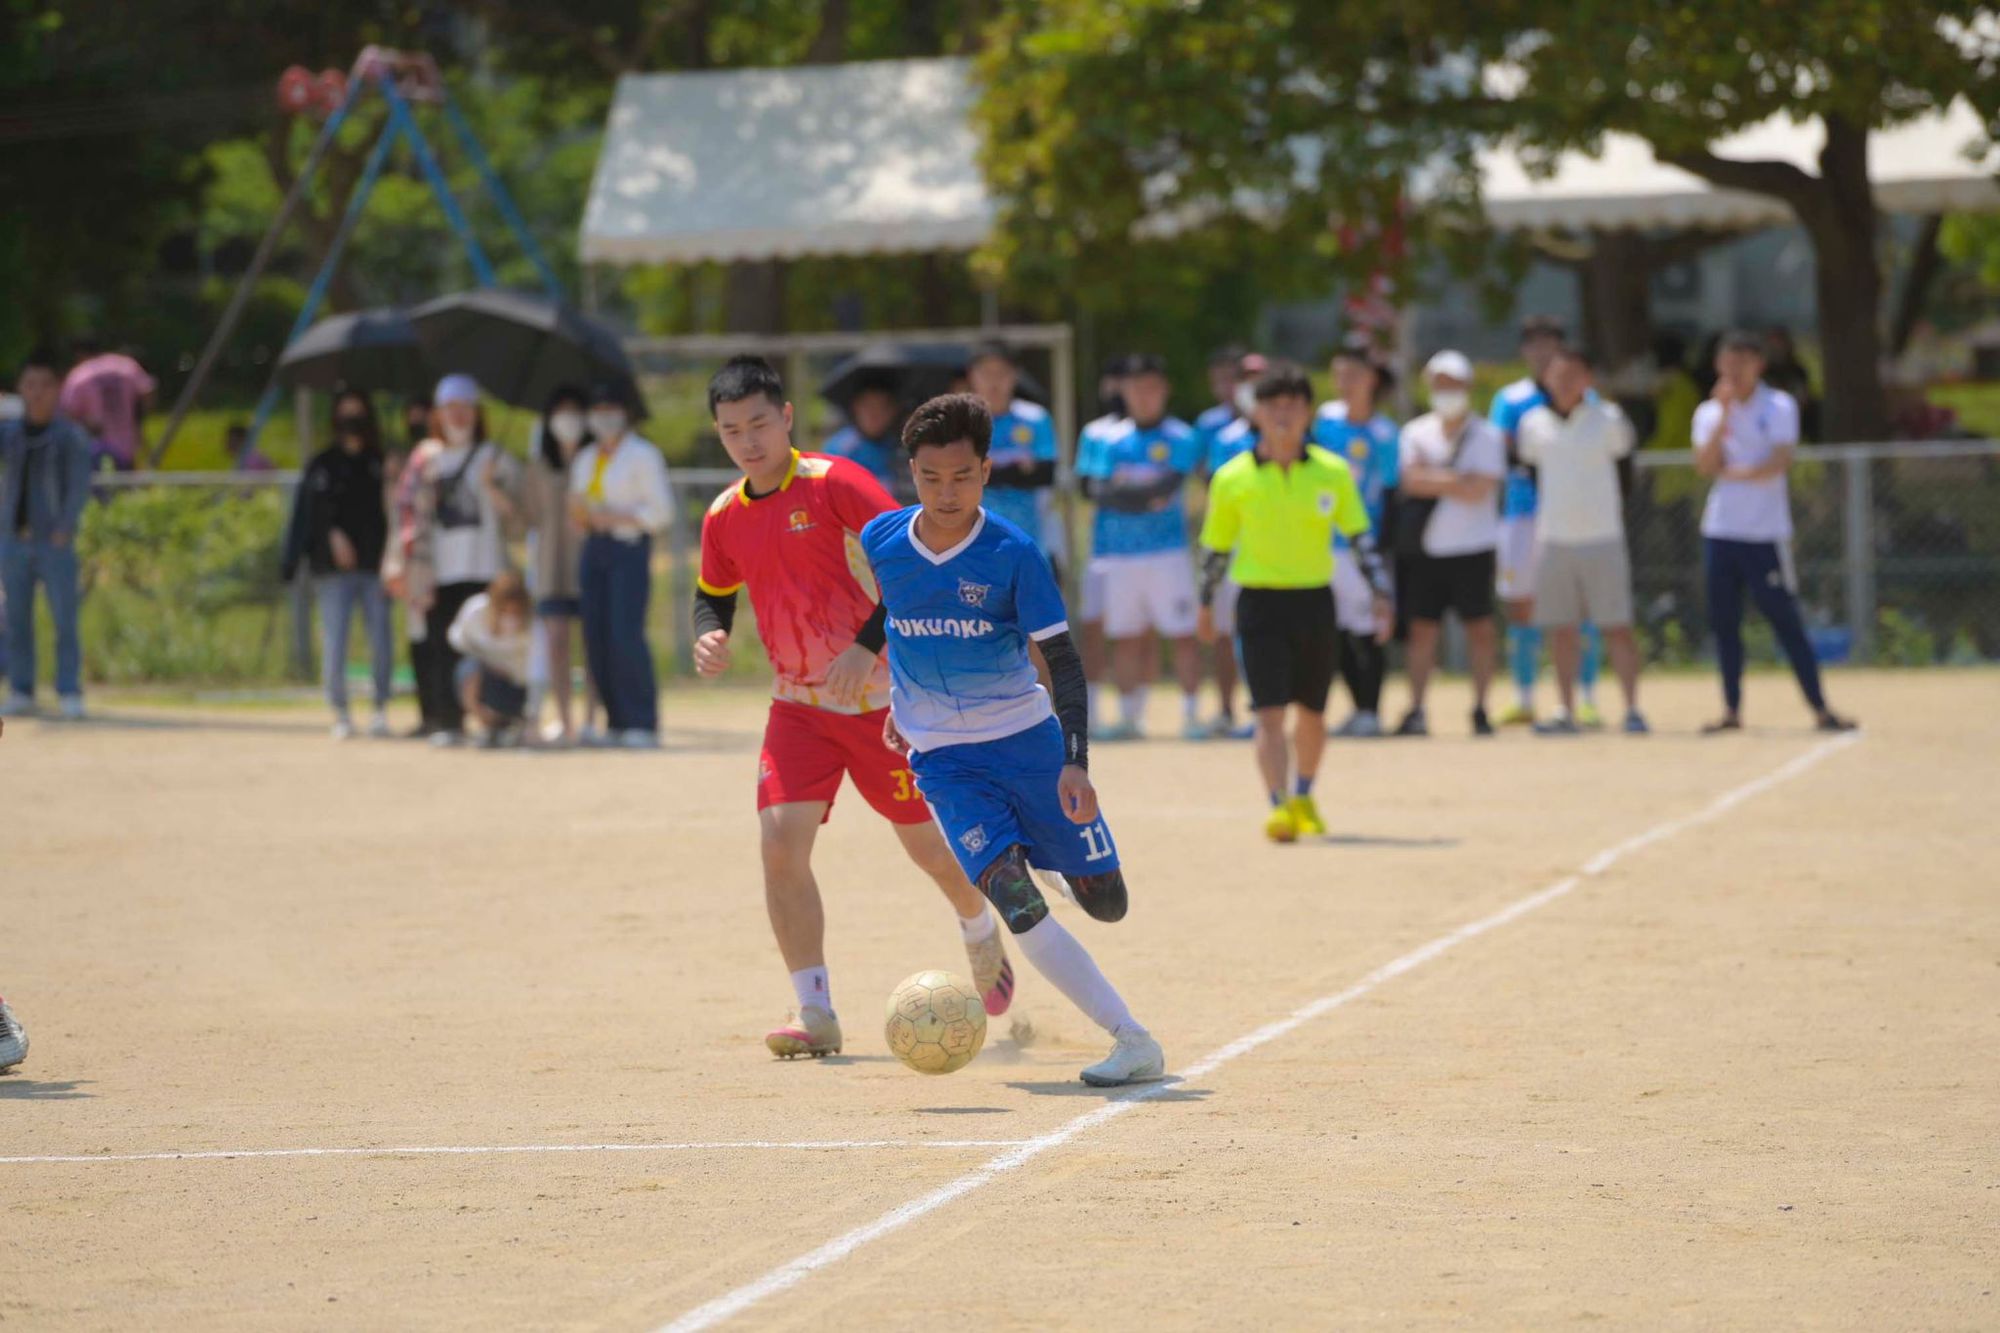 Đại hội thể thao người Việt Nam tại Kitakyushu: Sự kiện quy mô, chuyên nghiệp khiến người Nhật bất ngờ - Ảnh 2.